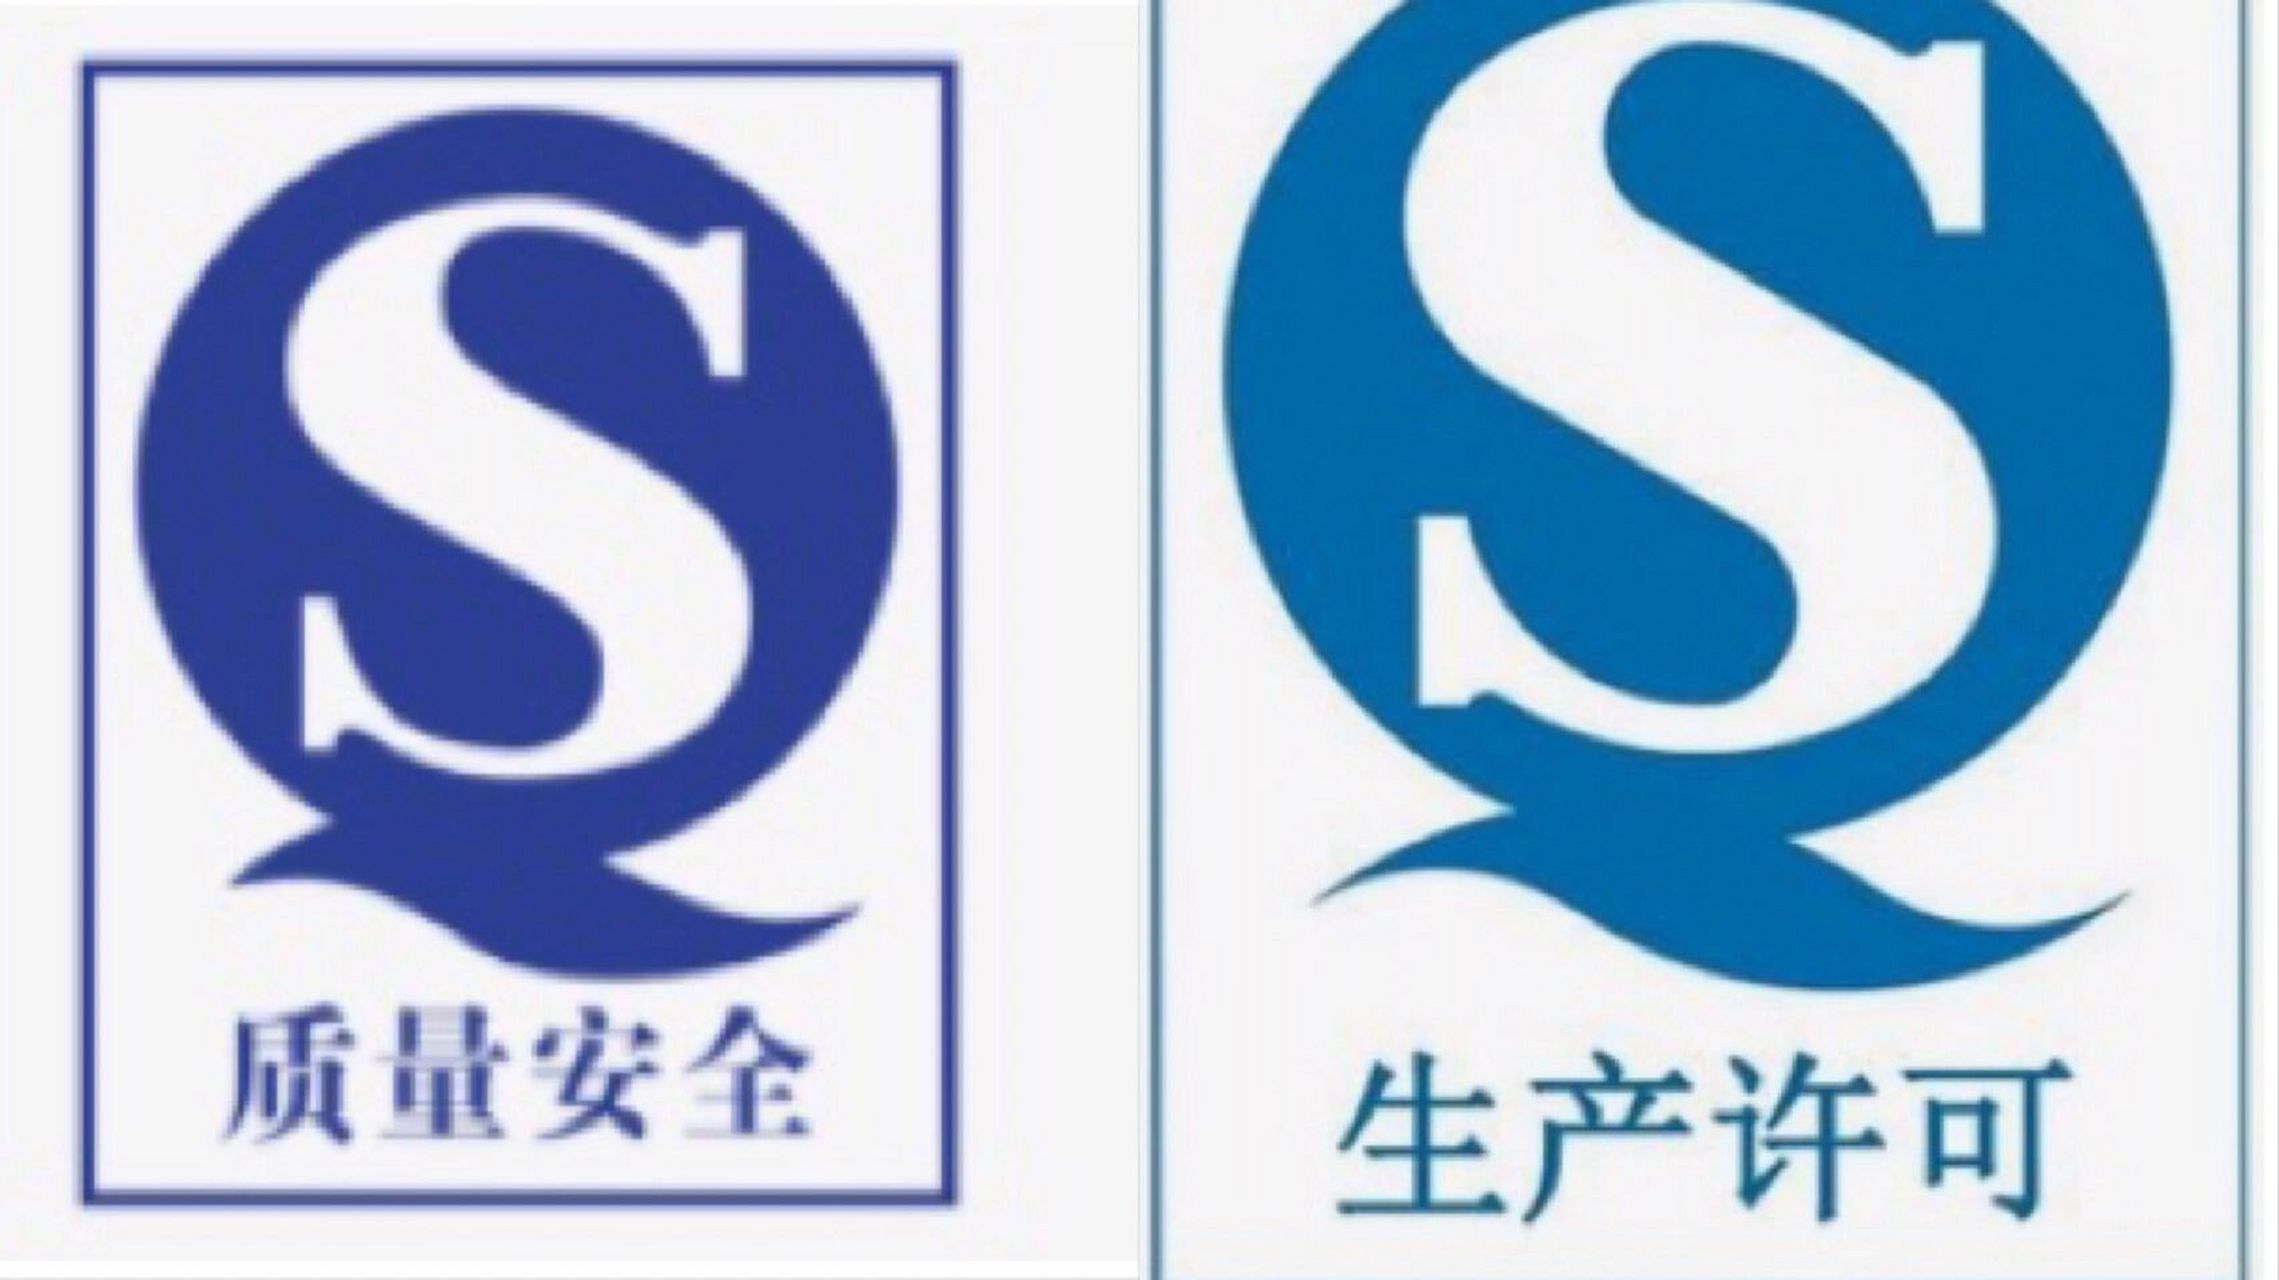 中国食品安全认证标志图片